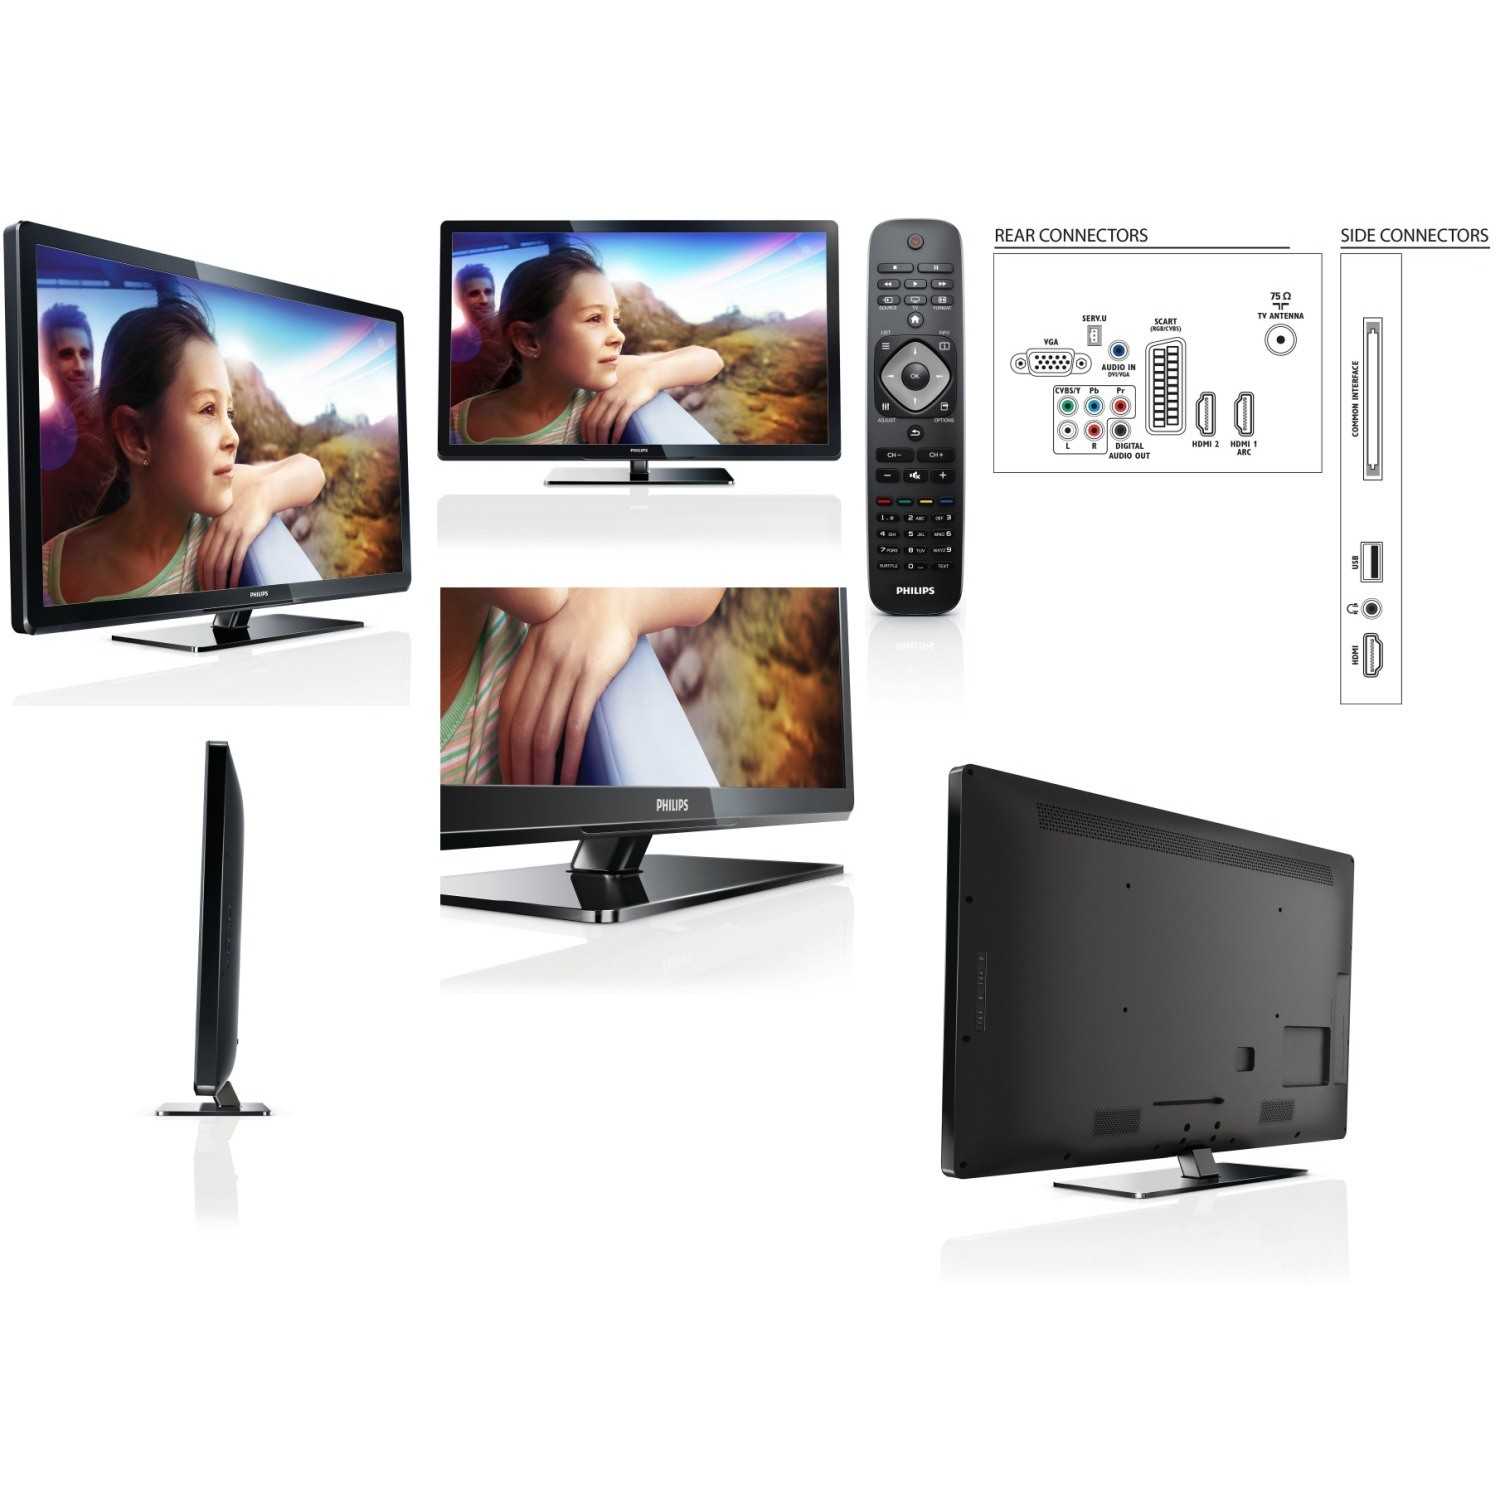 Philips 28pfl2908h - купить , скидки, цена, отзывы, обзор, характеристики - телевизоры